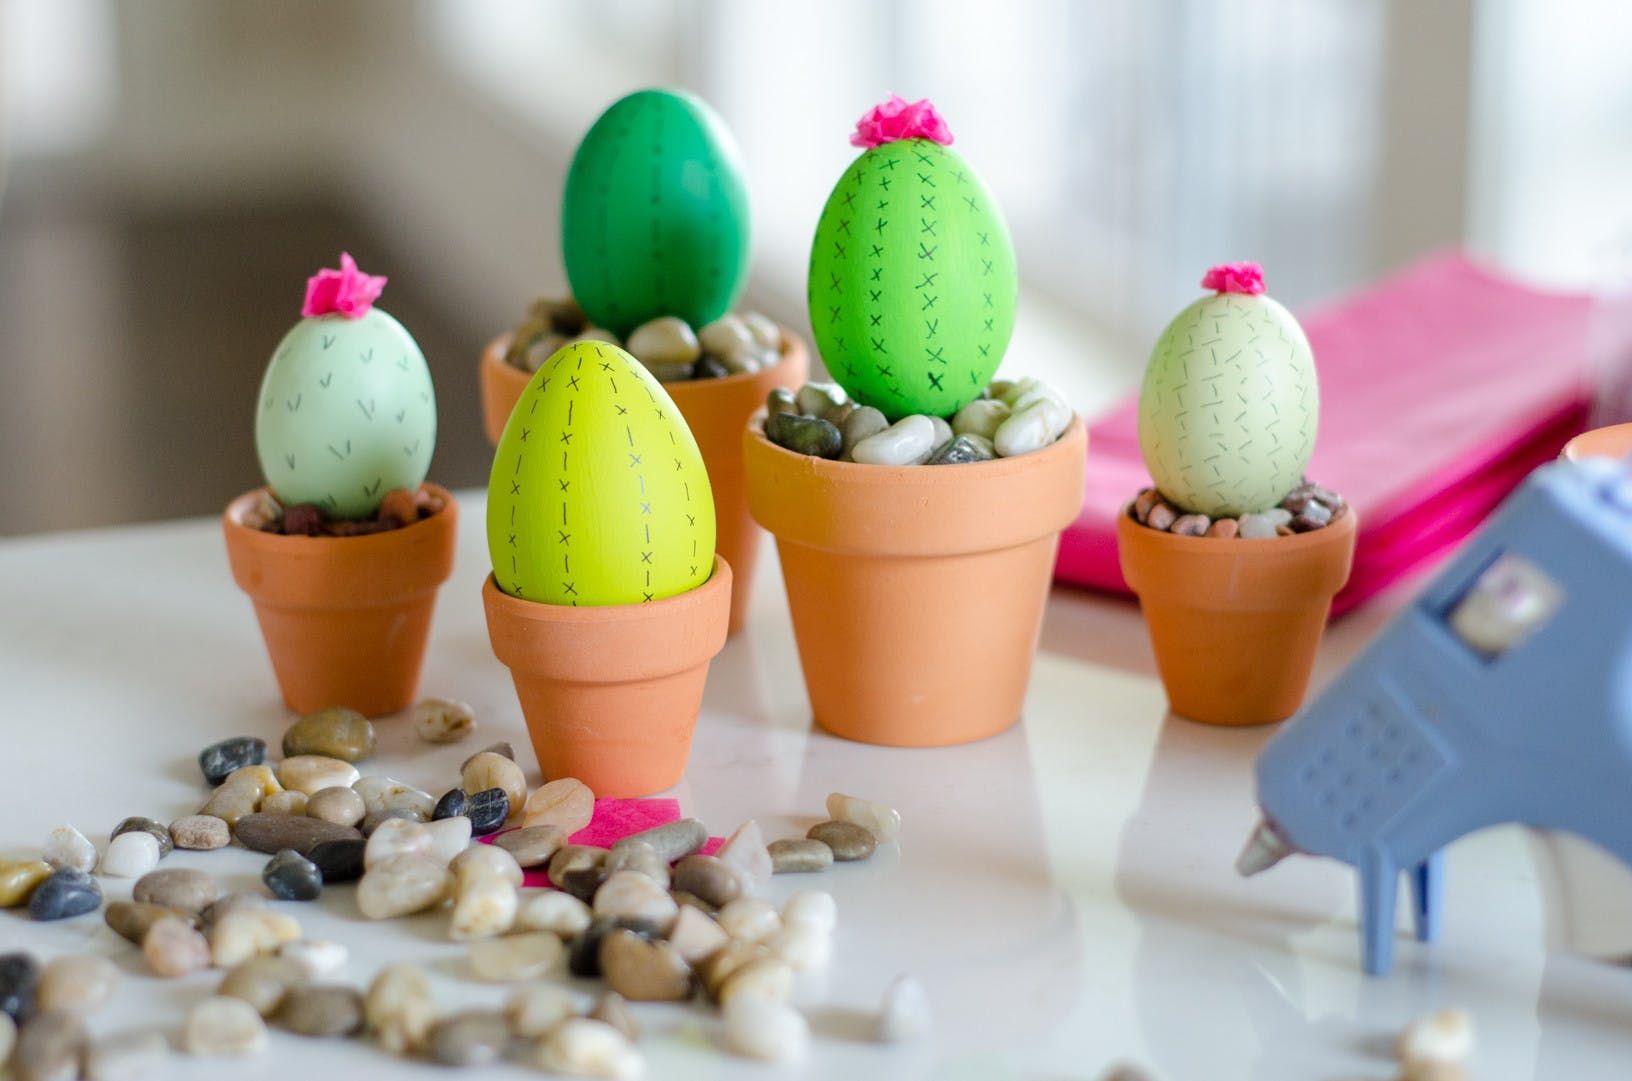 Easter Gift Ideas – Art Supplies ~ Tween / Teen Girl Gift Ideas